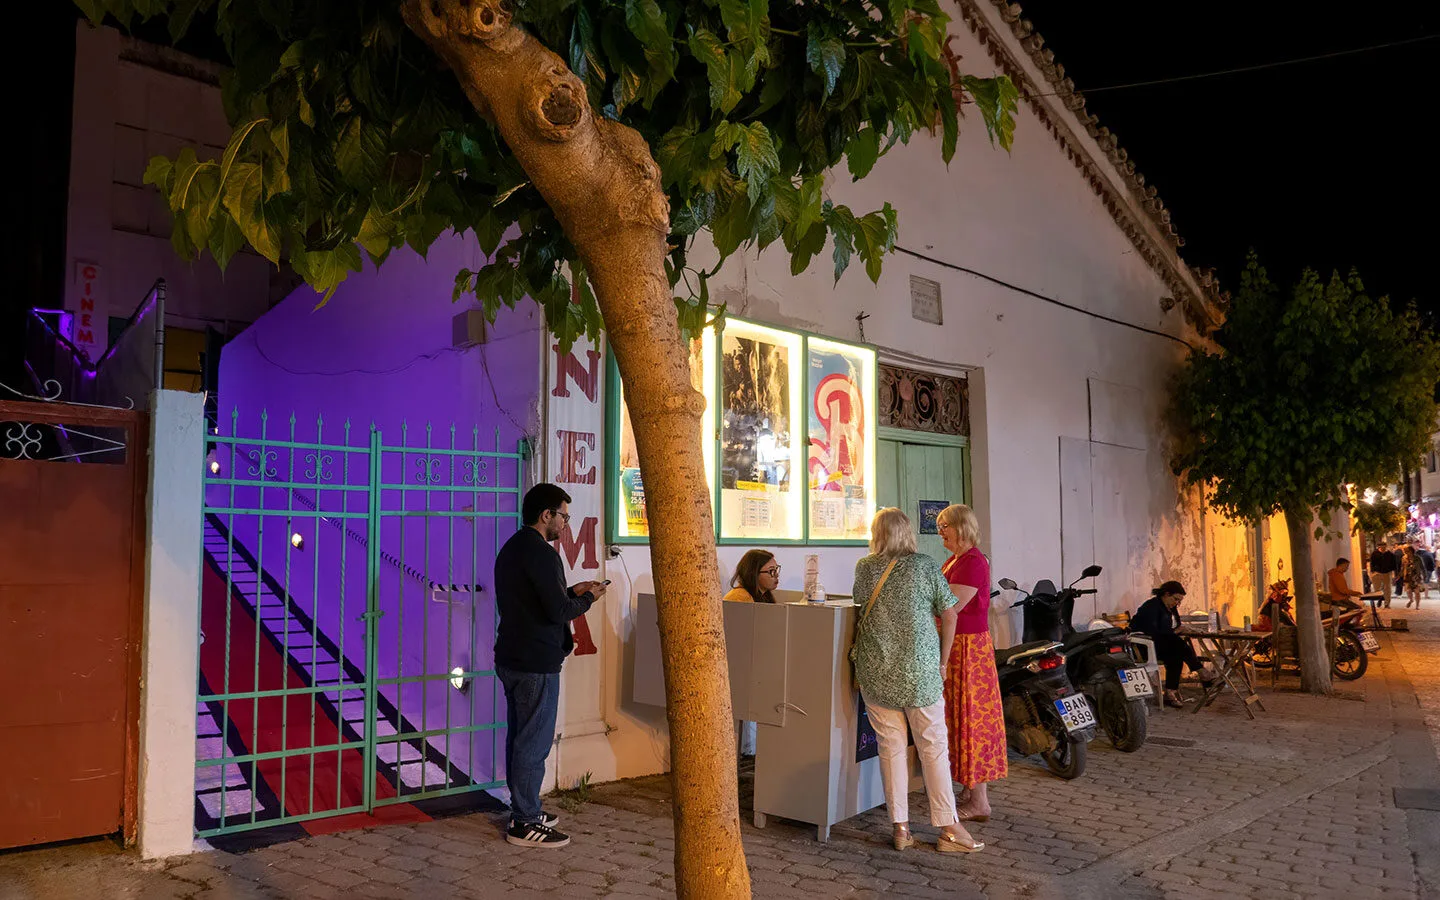 Skiathos Town's outdoor cinema showing Mamma Mia